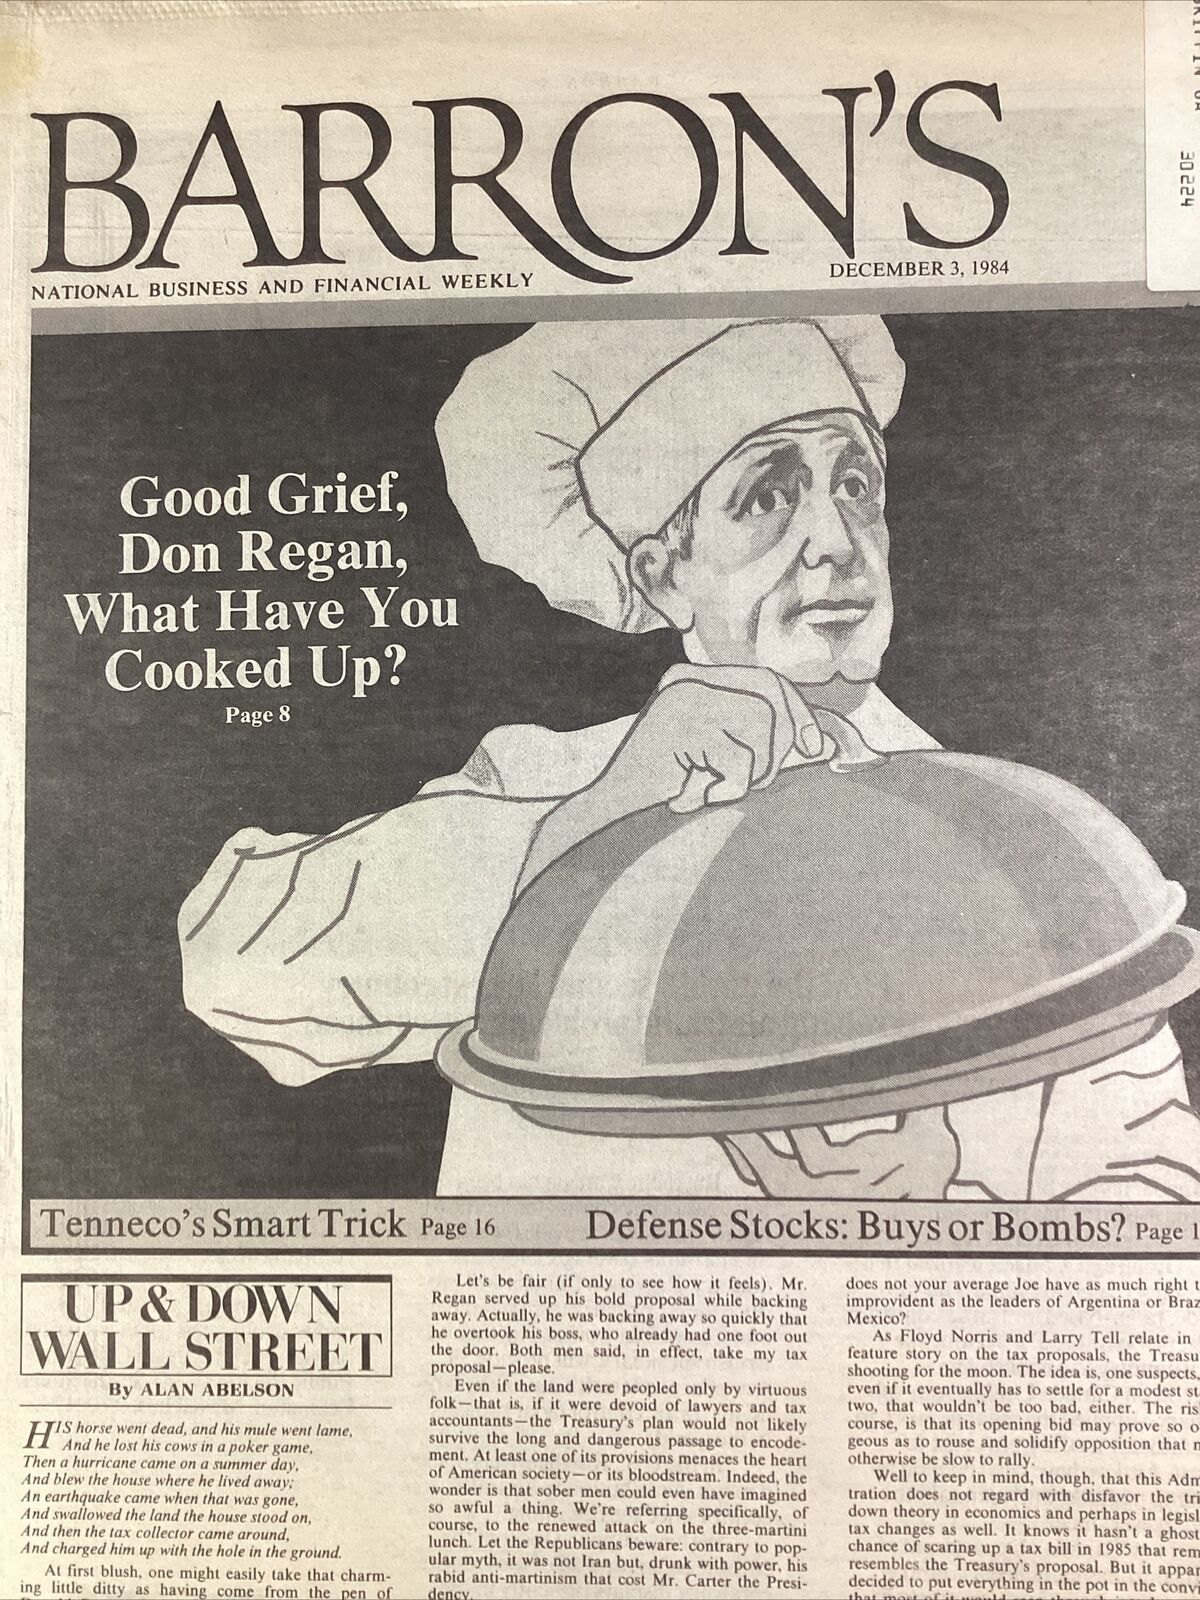 Barron’s Financial Weekly News 1984 Don Regan Cutler Culprit Work From Home Tech